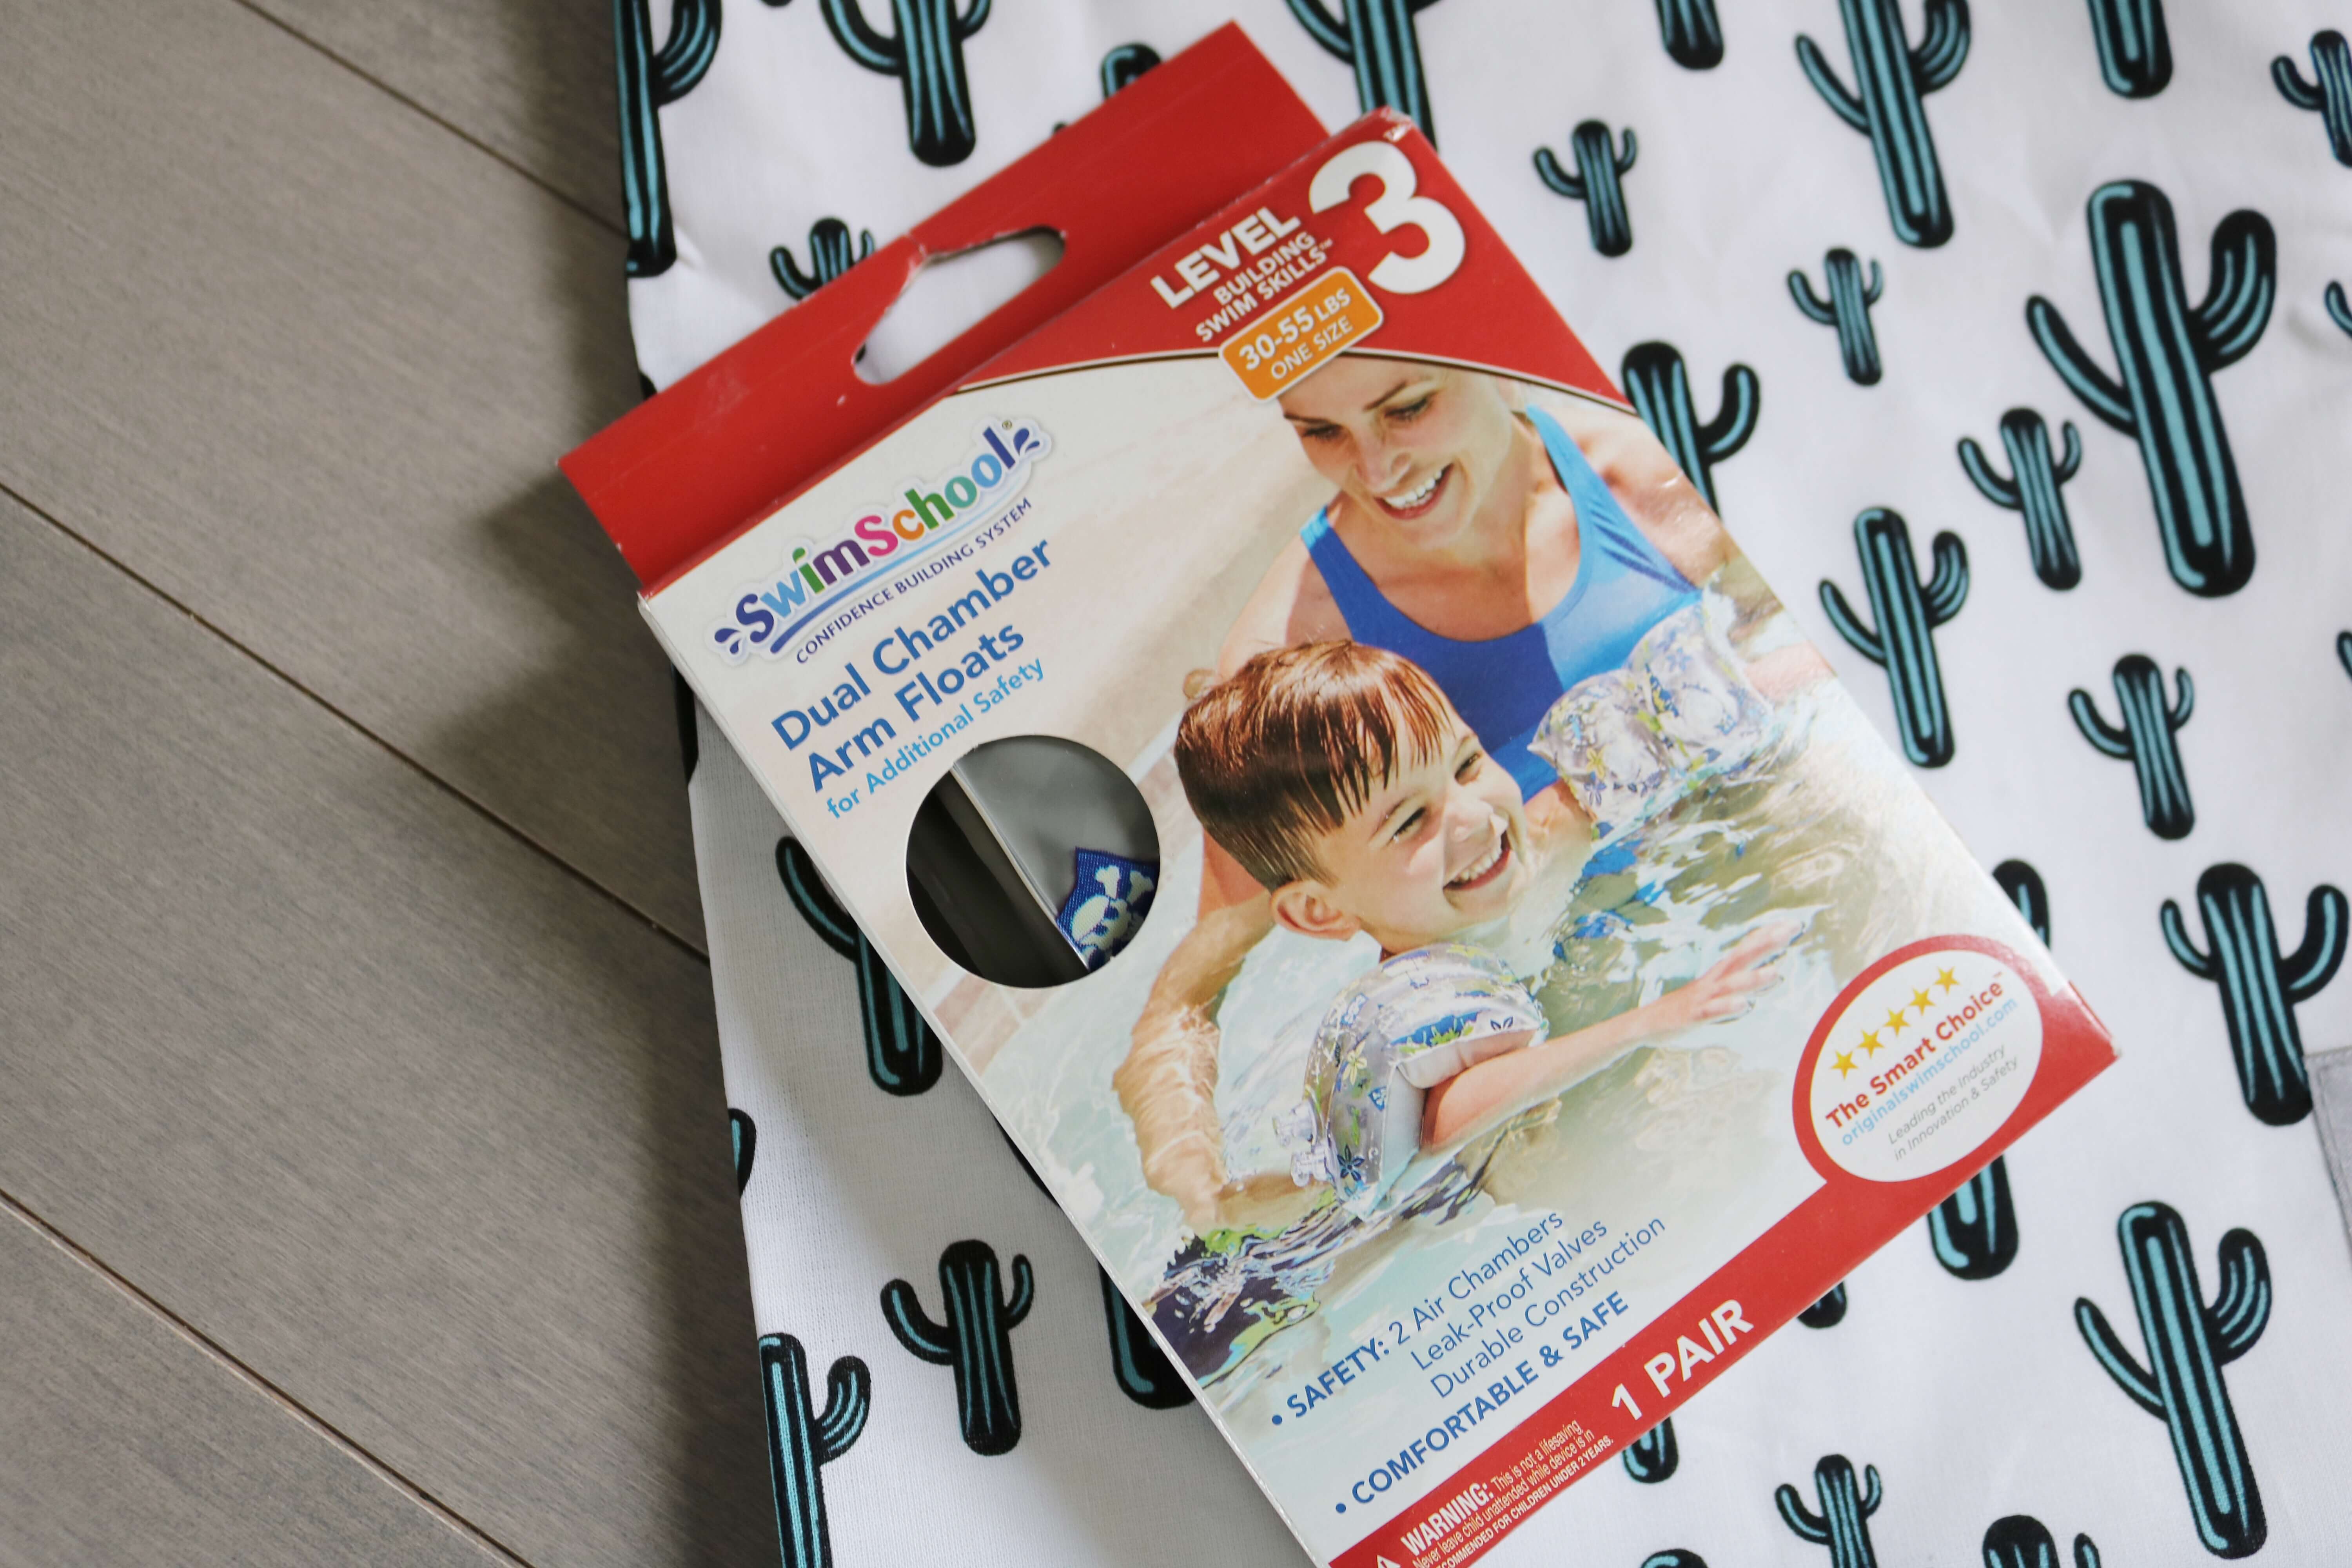 Summer travel essentials from buybuyBaby; sparkleshinylove toddler travel essentials